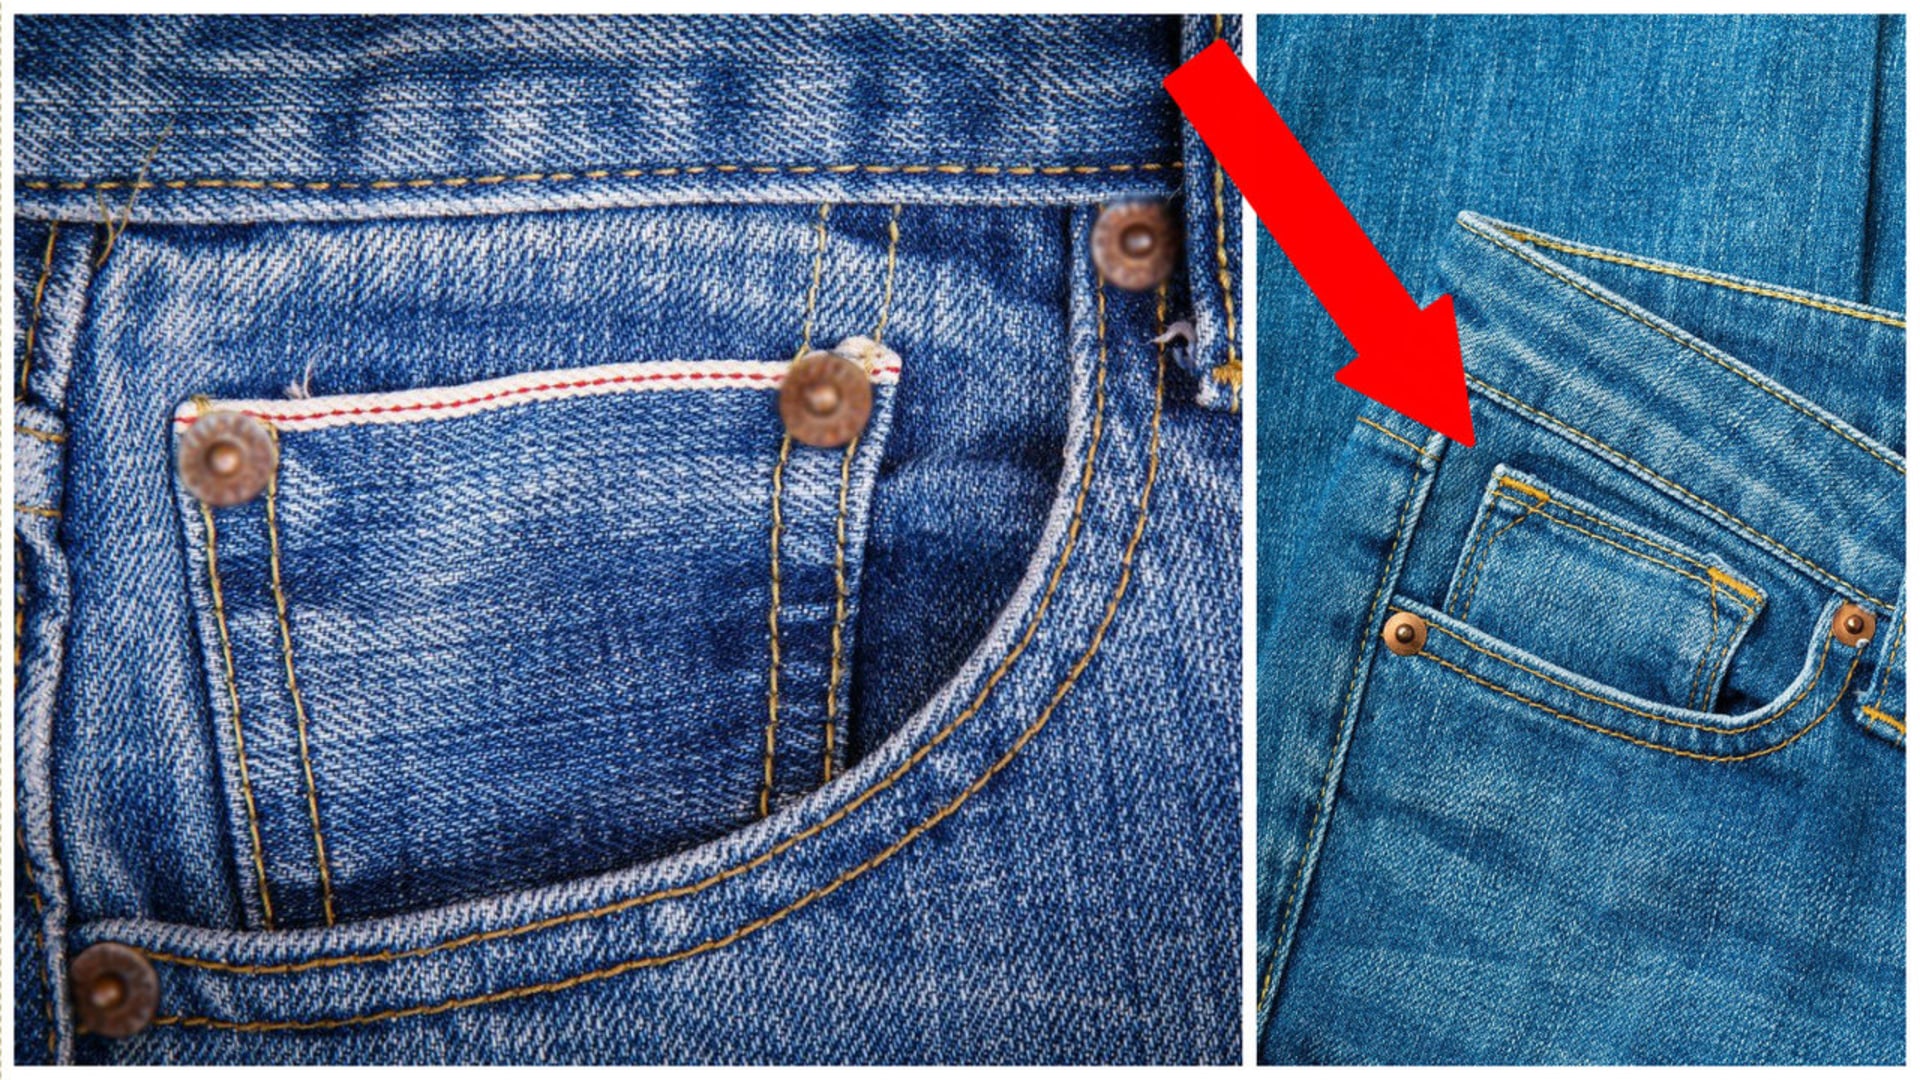 K čemu slouží malá kapsička na džínách?